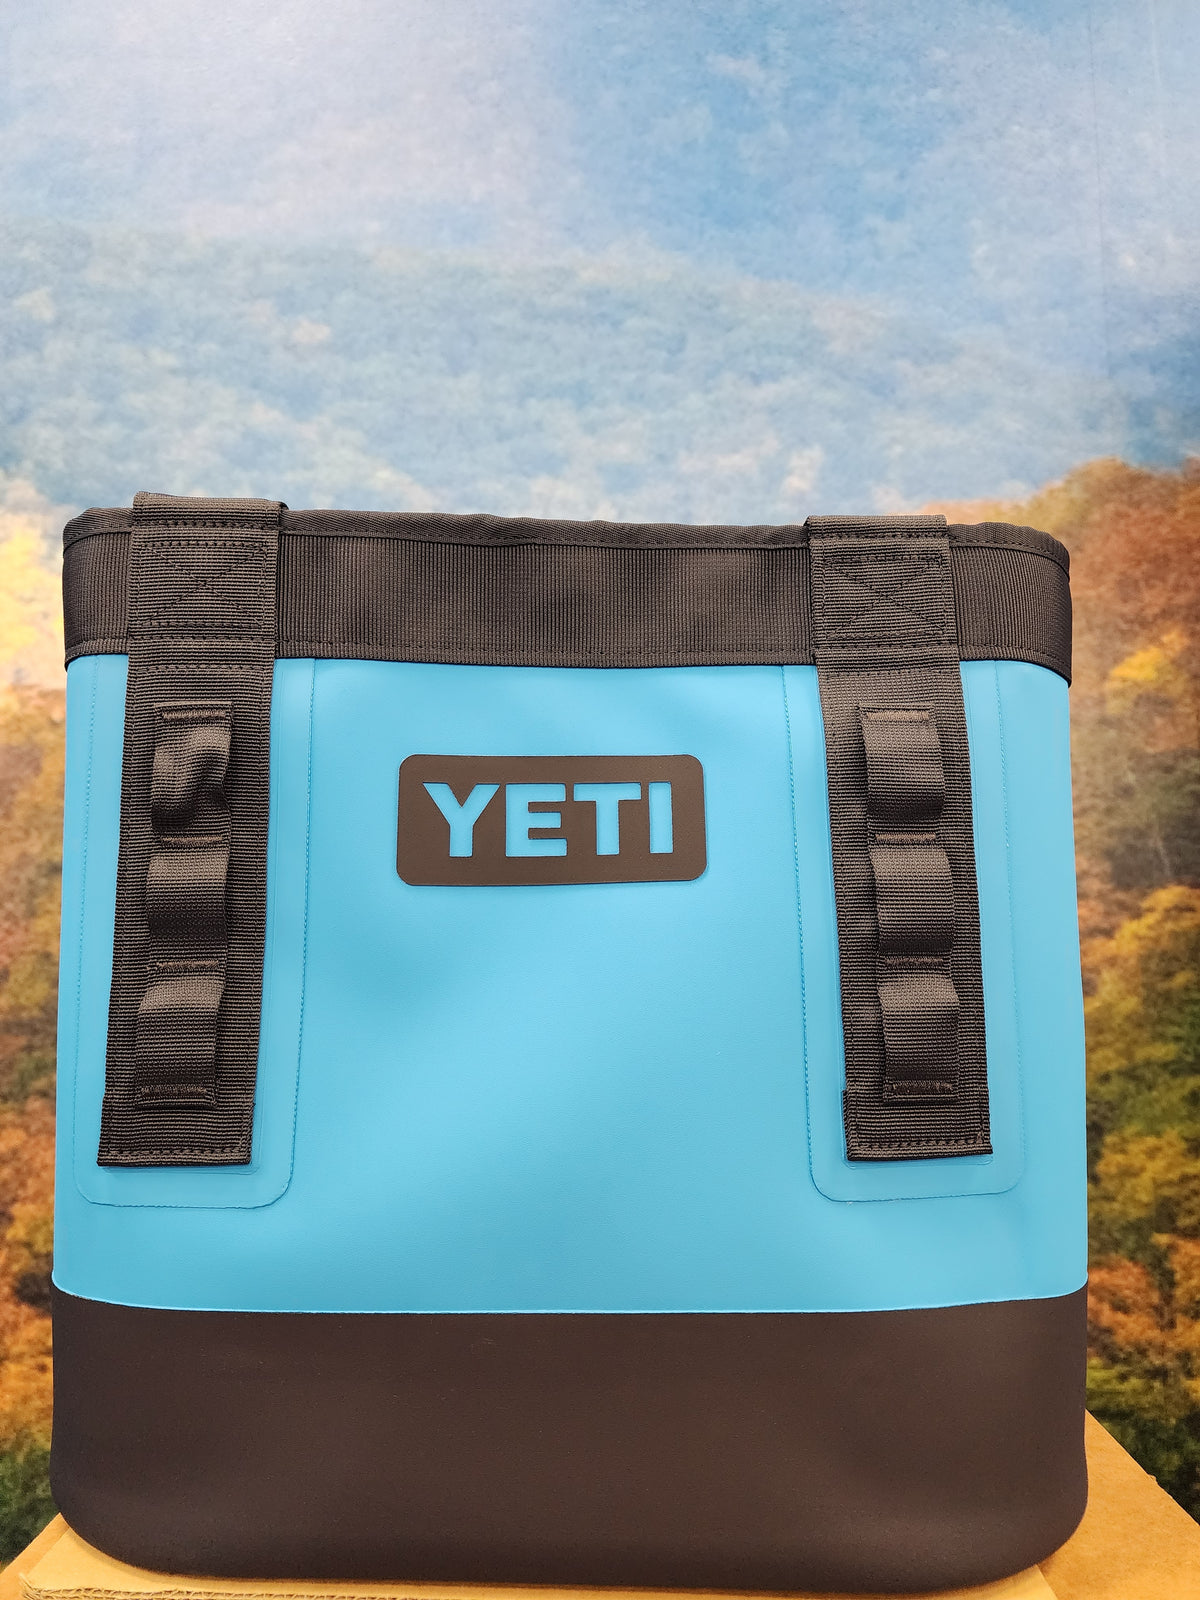 YETI-Camino 20 Carryall Tote Bag